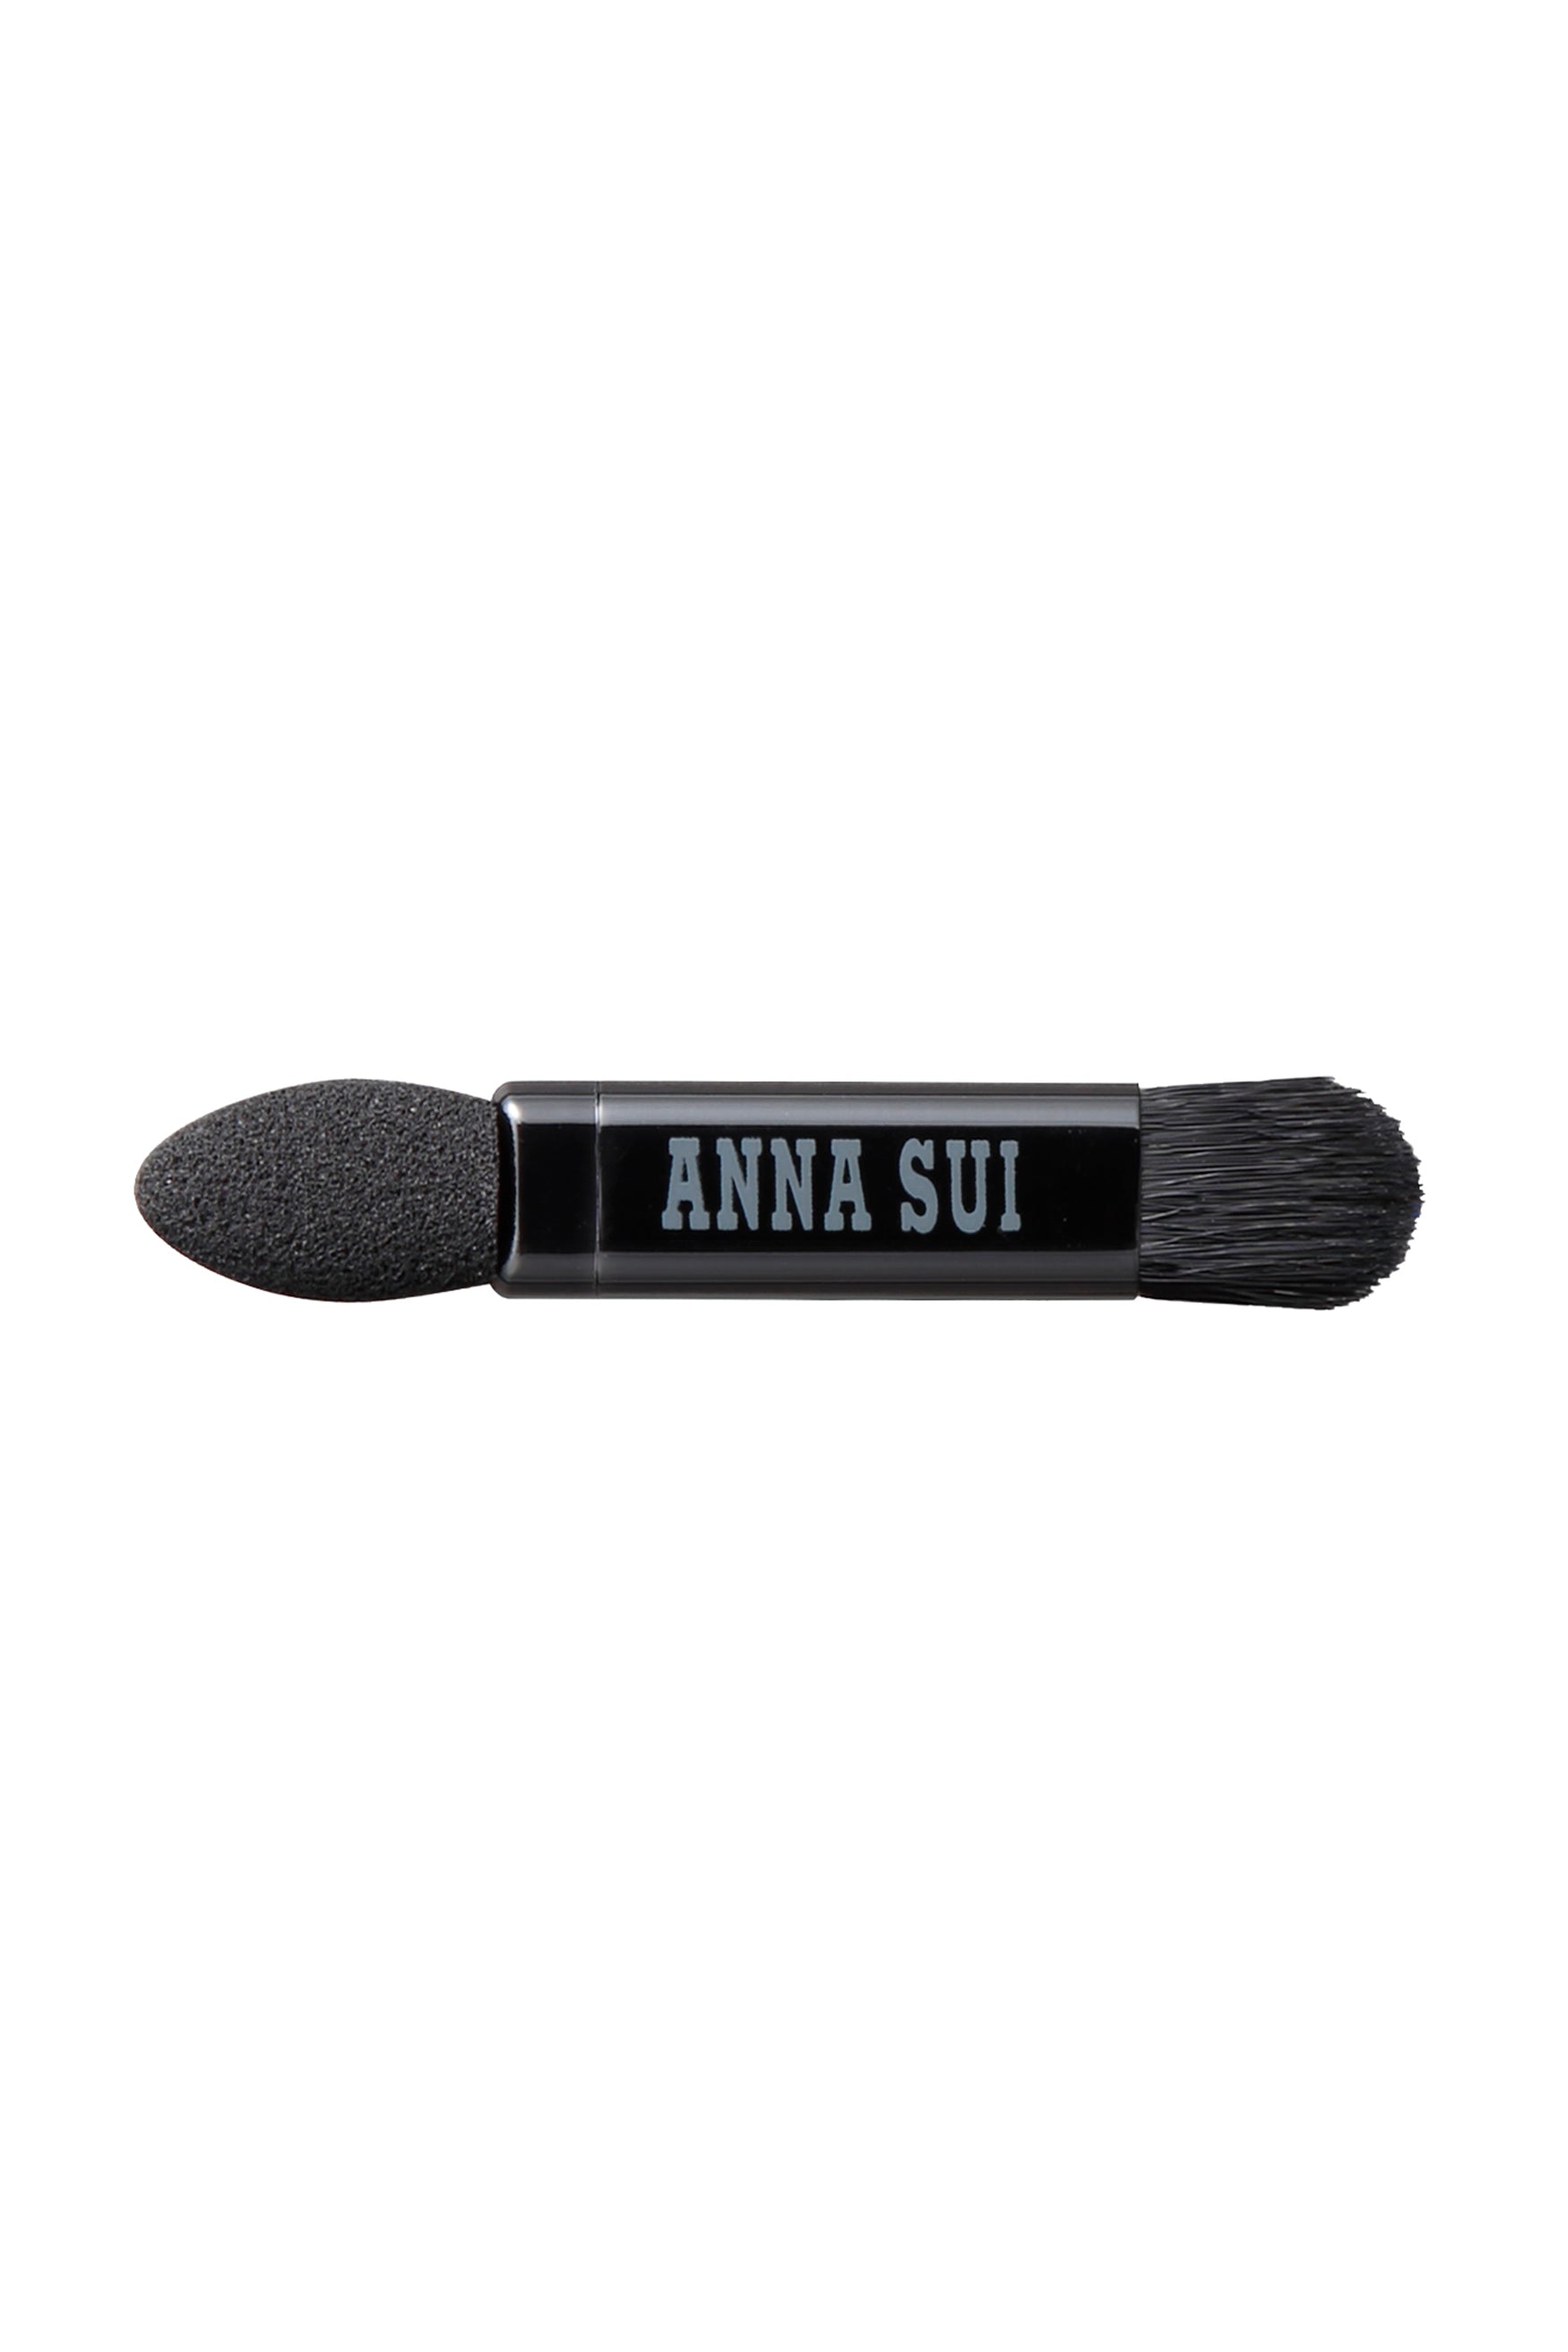 L'applicateur, une tête dure d'un côté, un Bruch de l'autre, l'étiquette Anna Sui au milieu.